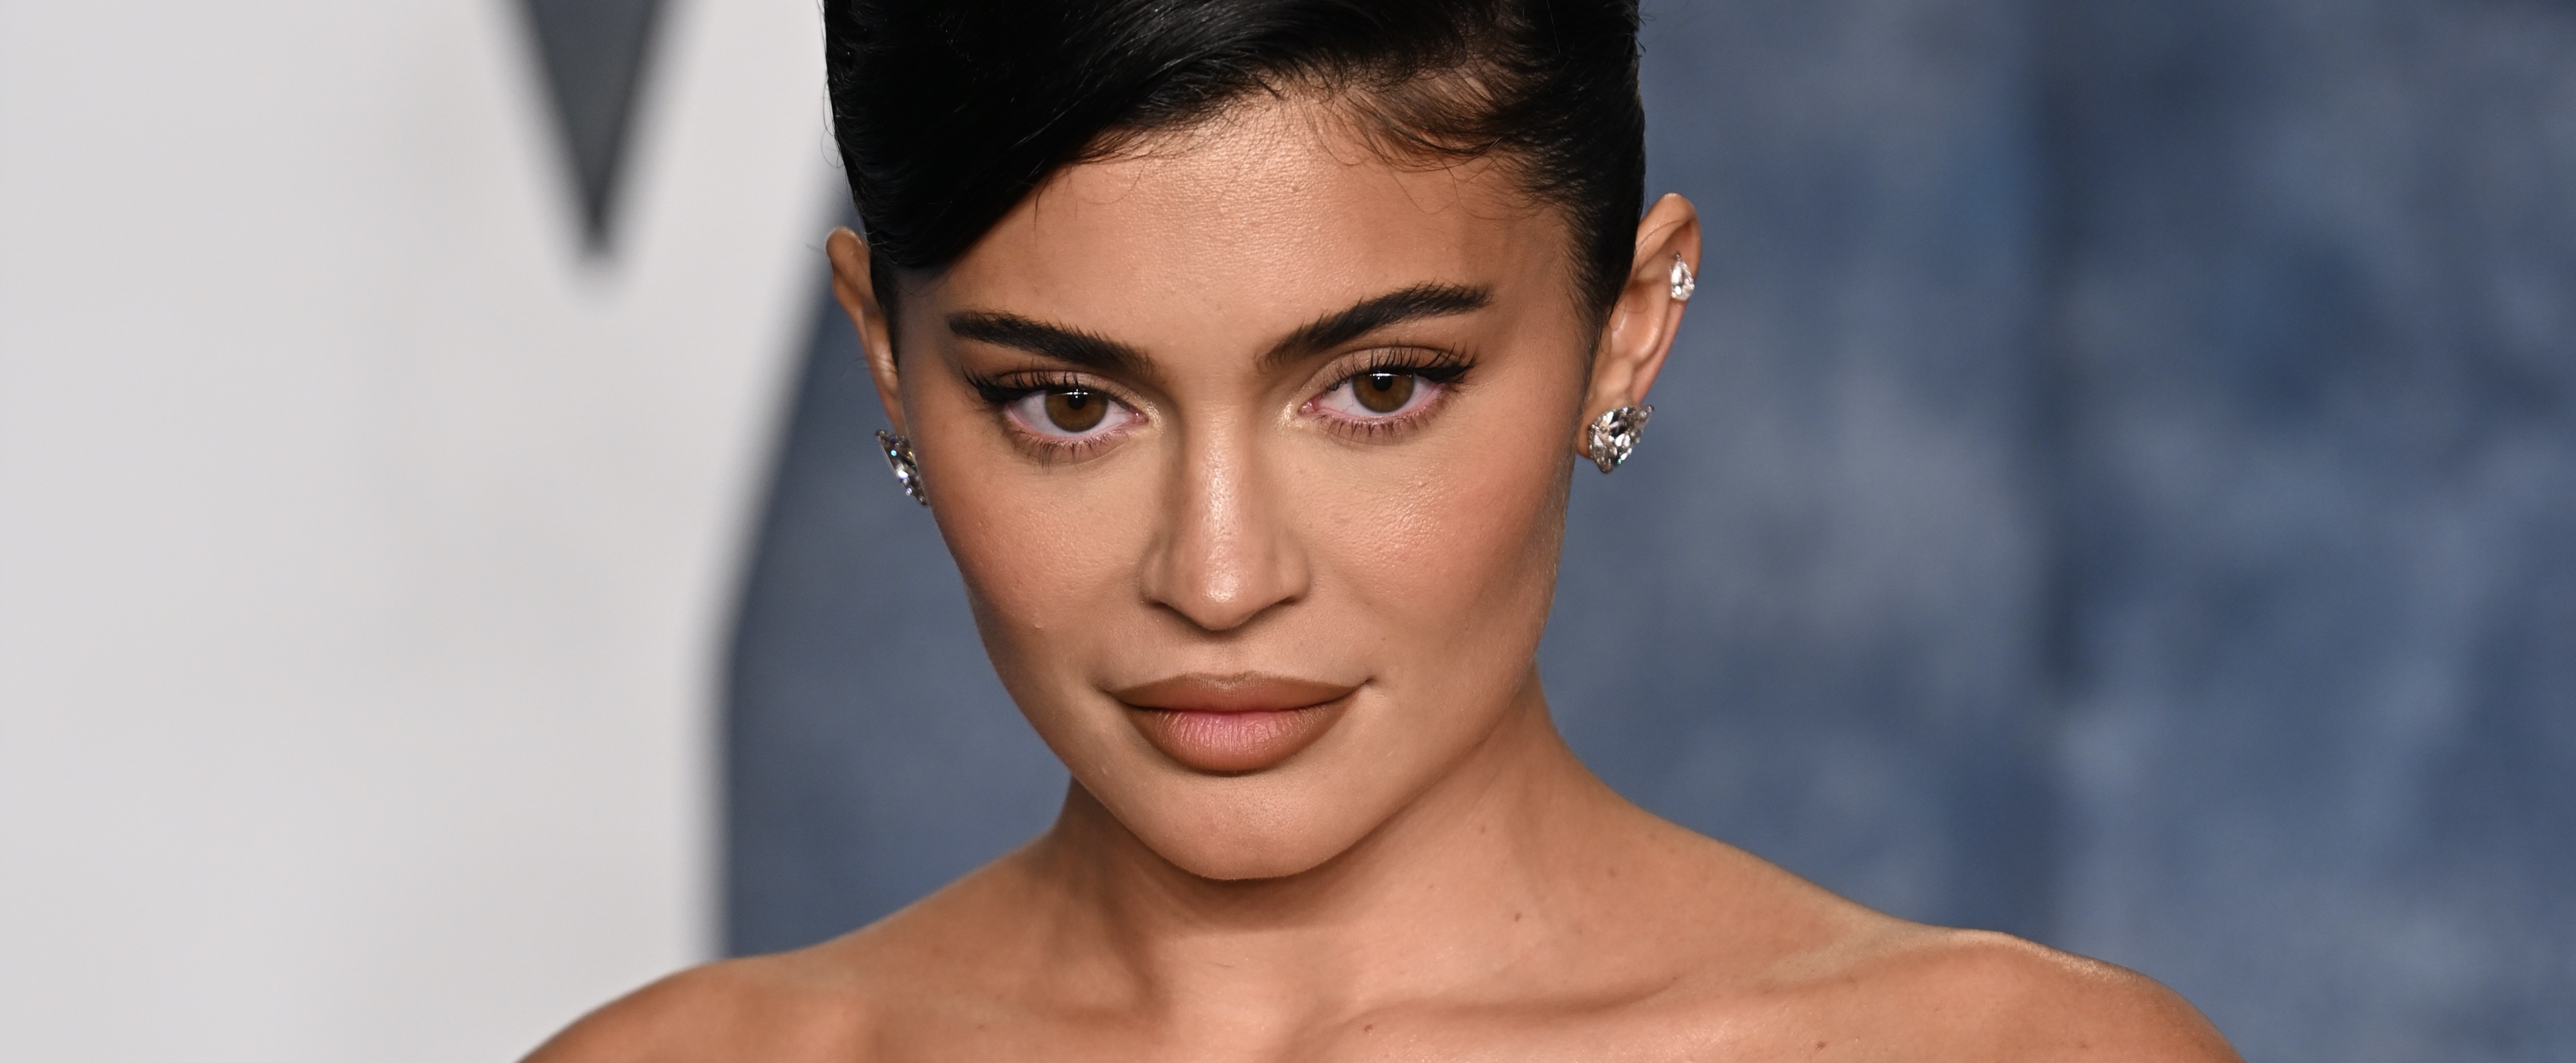 Celebrities hebben massaal een 'stinky face': hier komt ‘t door